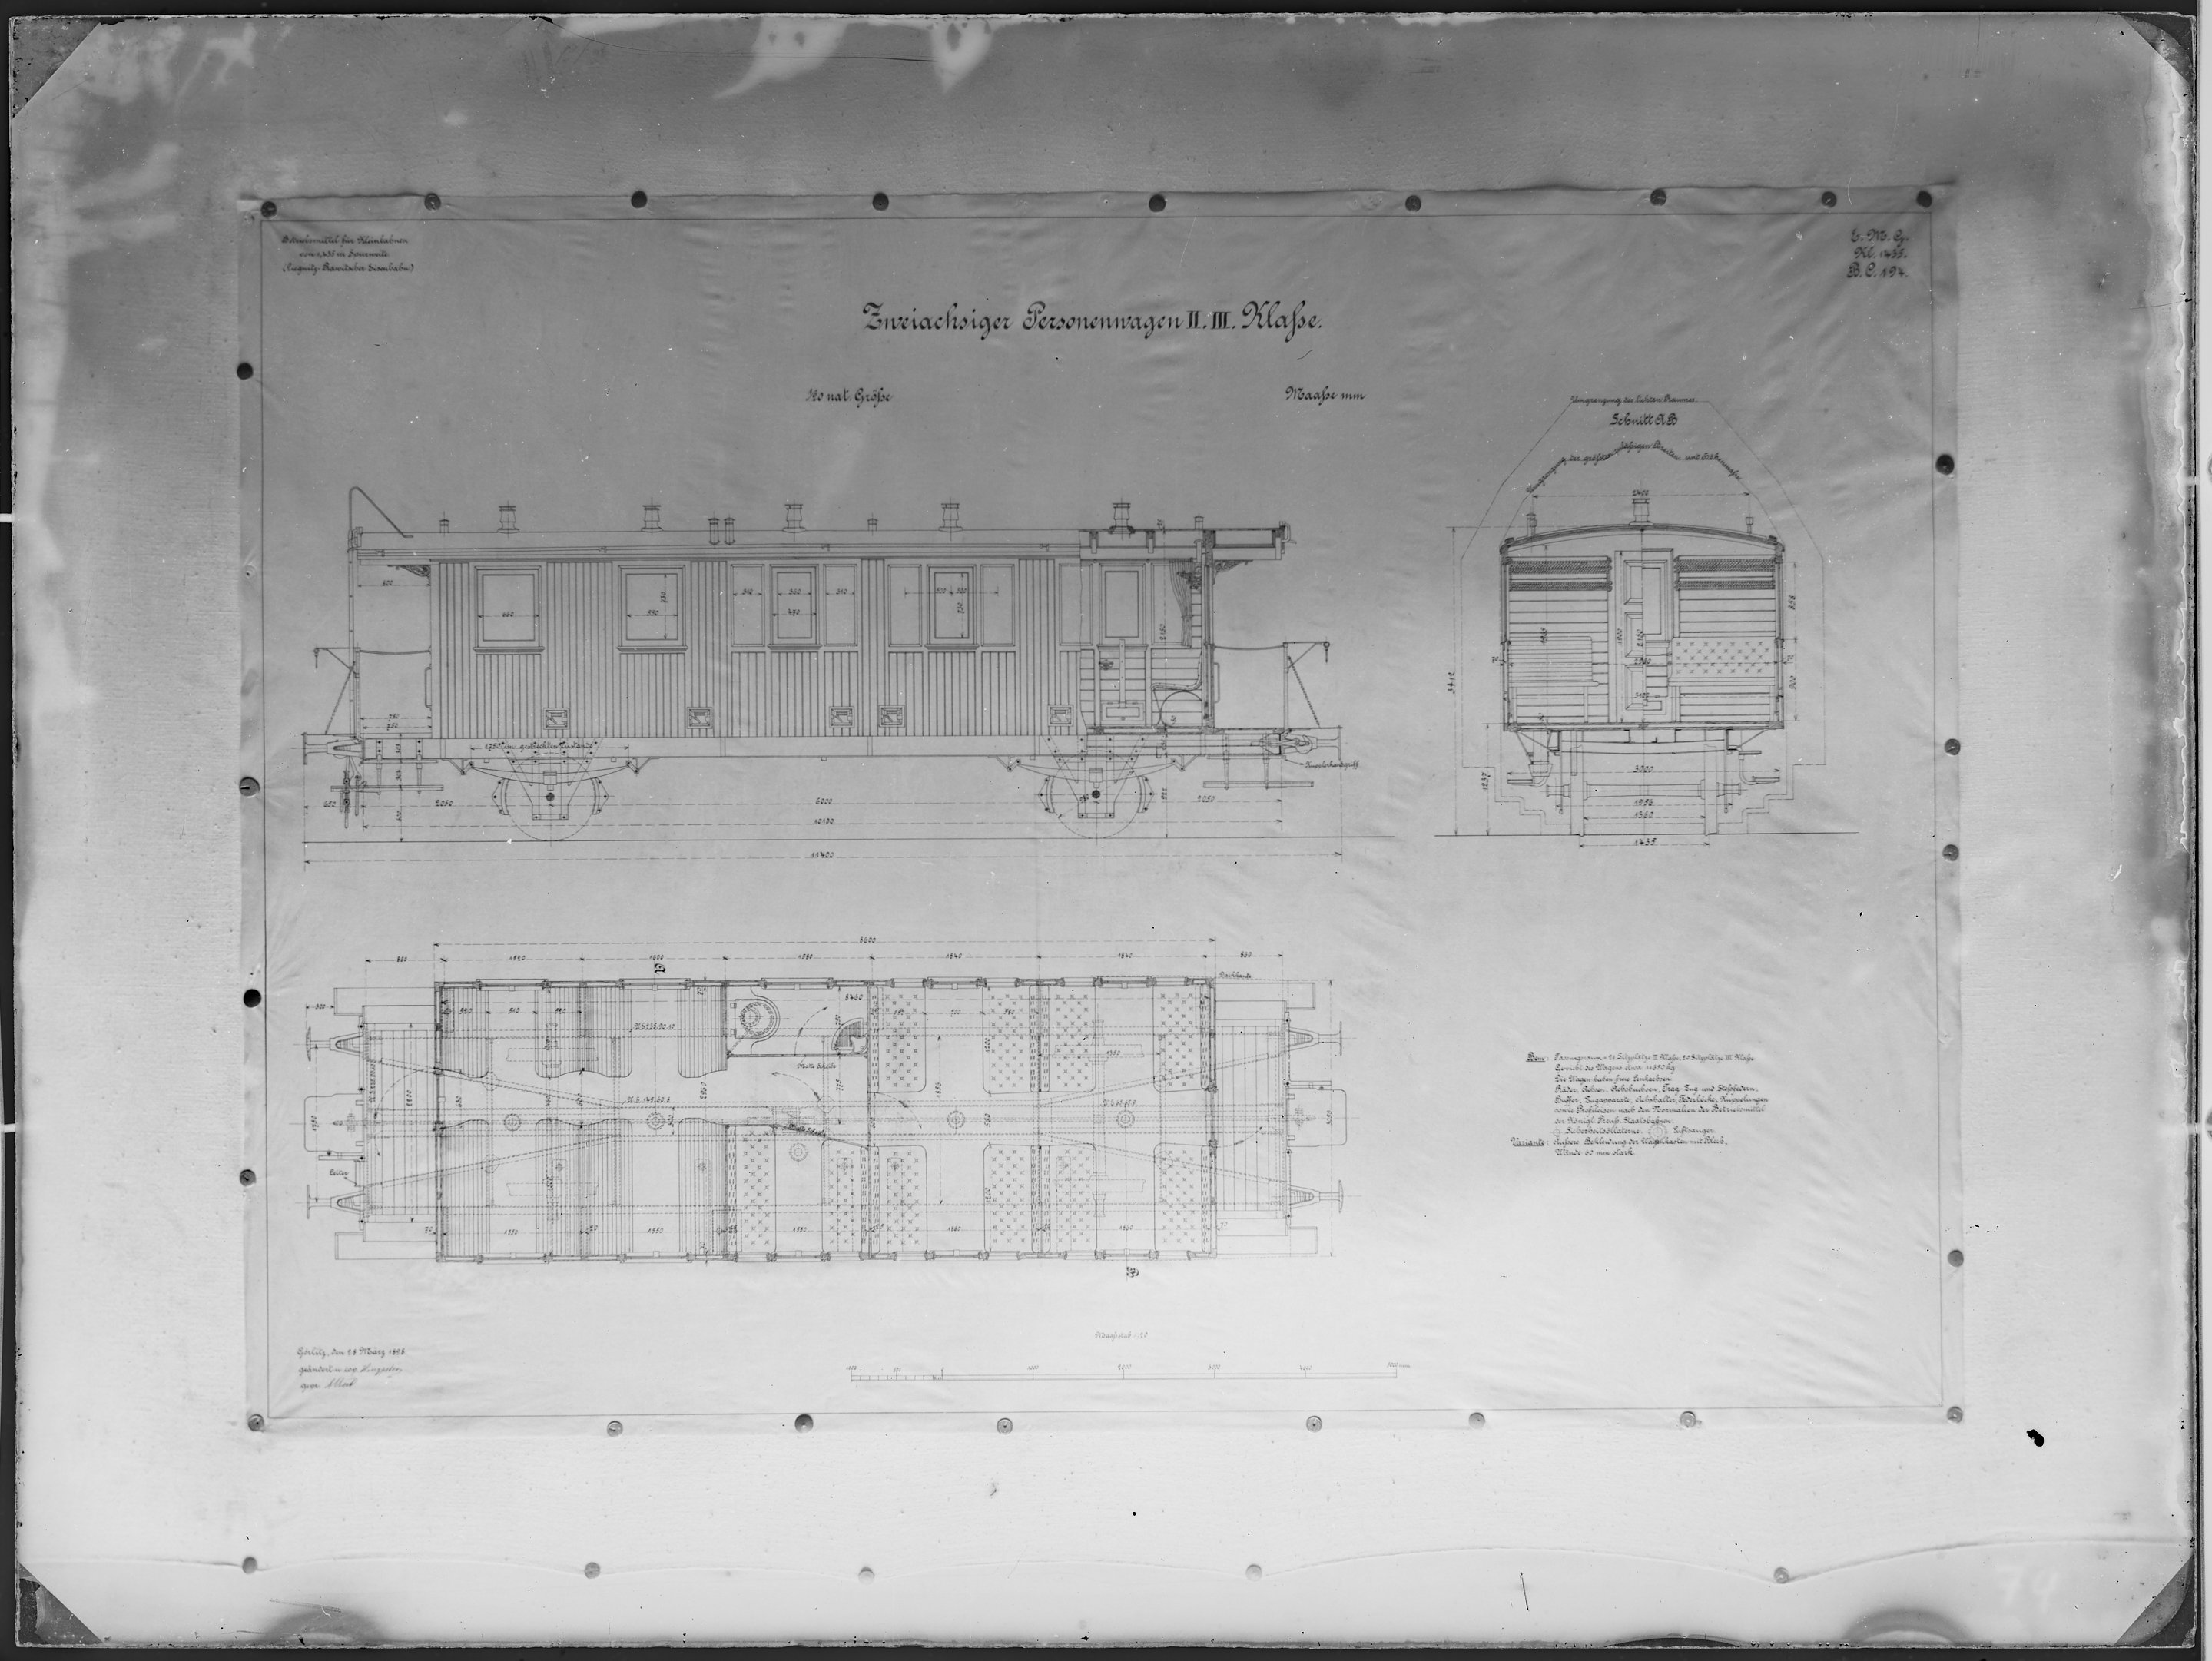 Fotografie: Maßzeichnung eines zweiachsigen Personenwagens zweiter/dritter Klasse für Kleinbahn, Maßstab 1:20 (Spurweite: 1435 mm), 1898. Liegnitz-Raw (Verkehrsmuseum Dresden CC BY-NC-SA)